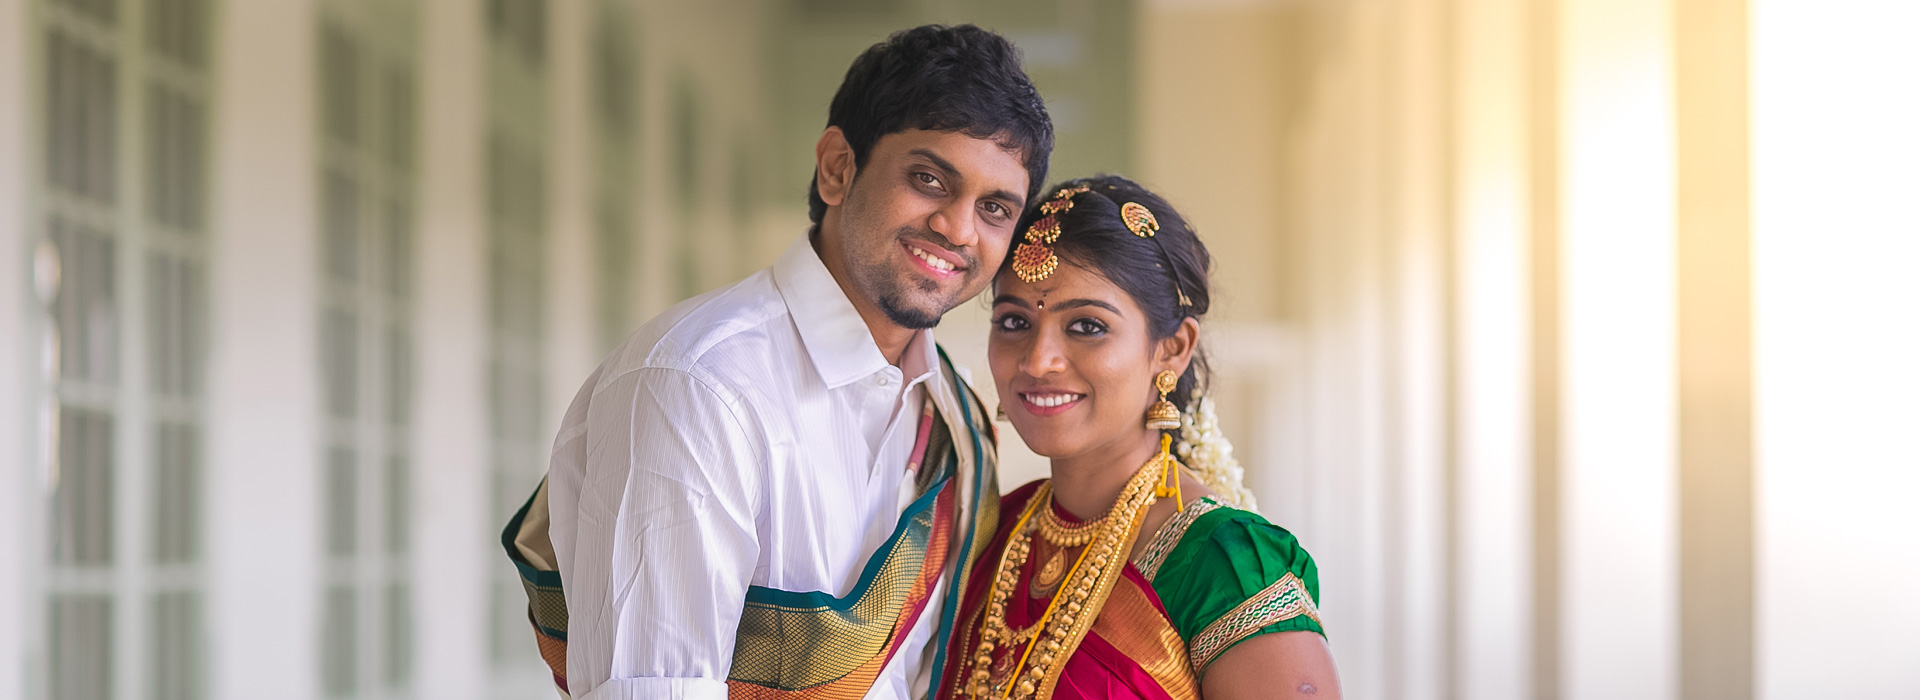 Candid Wedding photographer Chennai - FotoZone - Professional Wedding and  Portrait Photographers